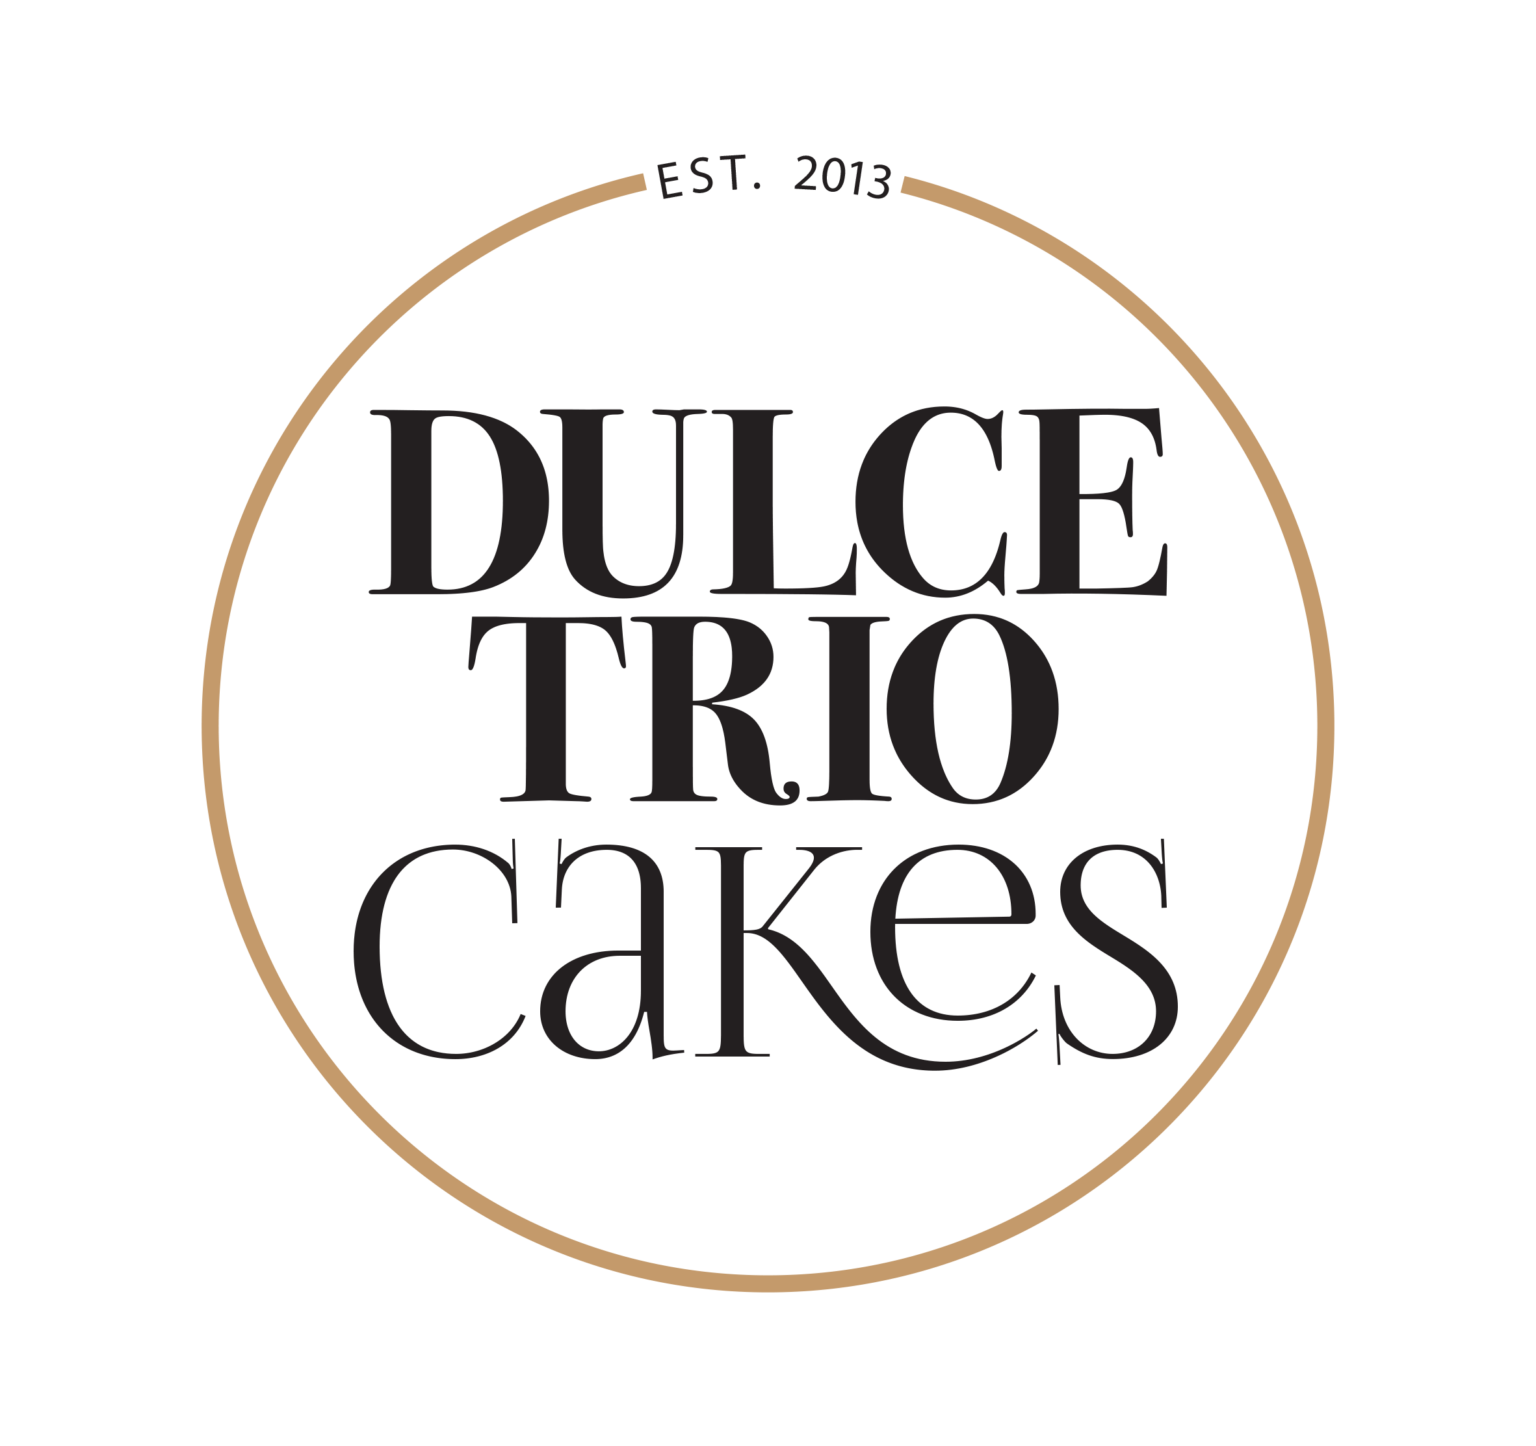 Dulce Trio – Pastry Chef and Cake Designer